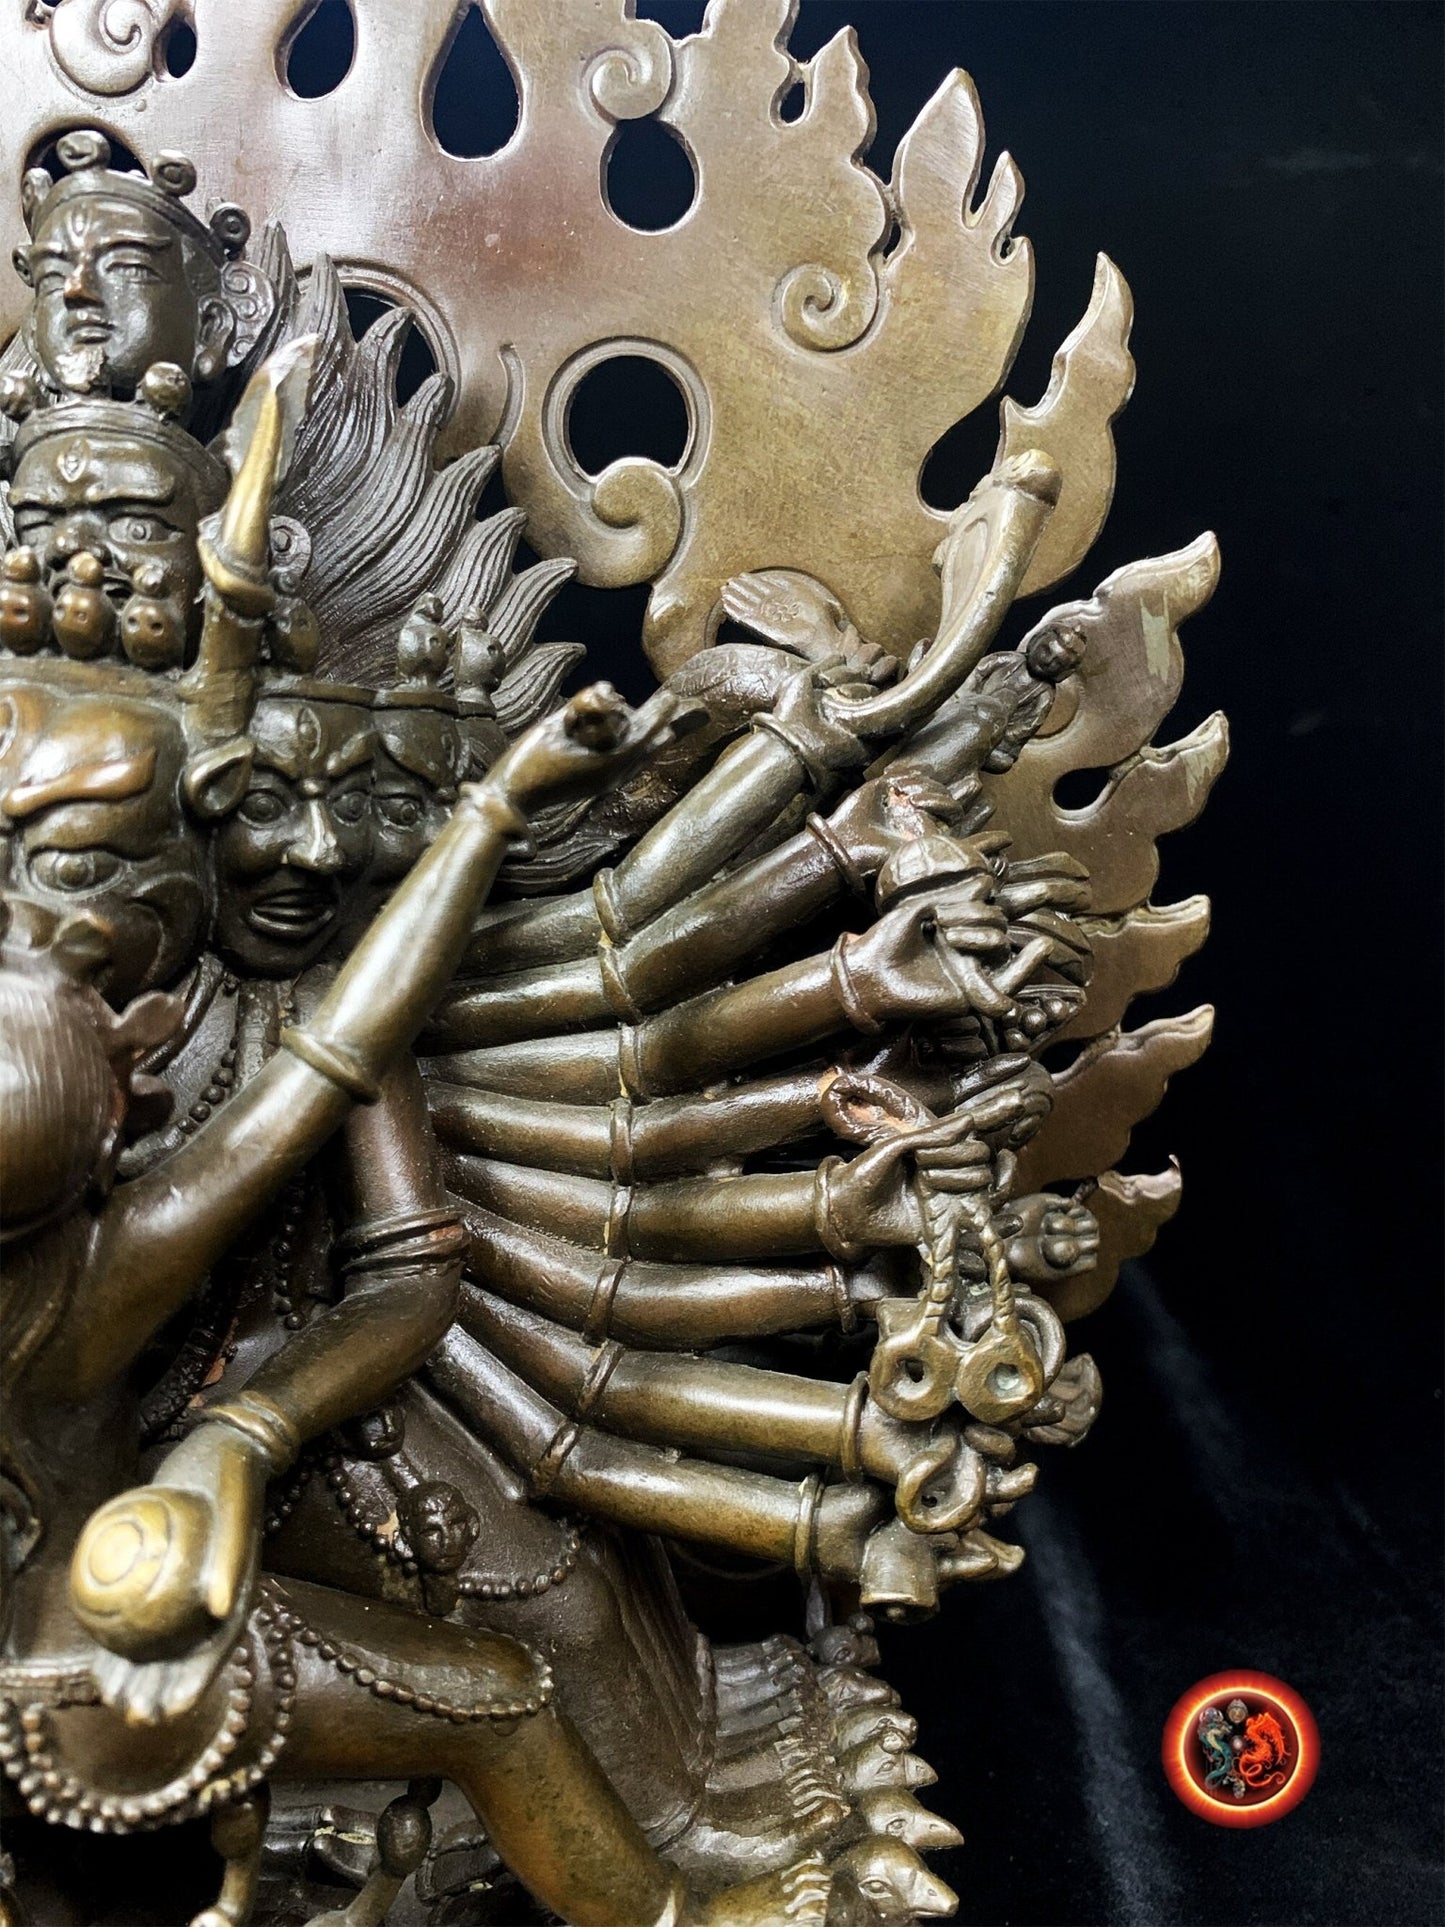 statuette bouddhiste,Statue Yidam Yamantaka, bouddhisme vajrayana ésotérique, tantrique  en yab yum avec sa parèdre Vétali. - obsidian dragon